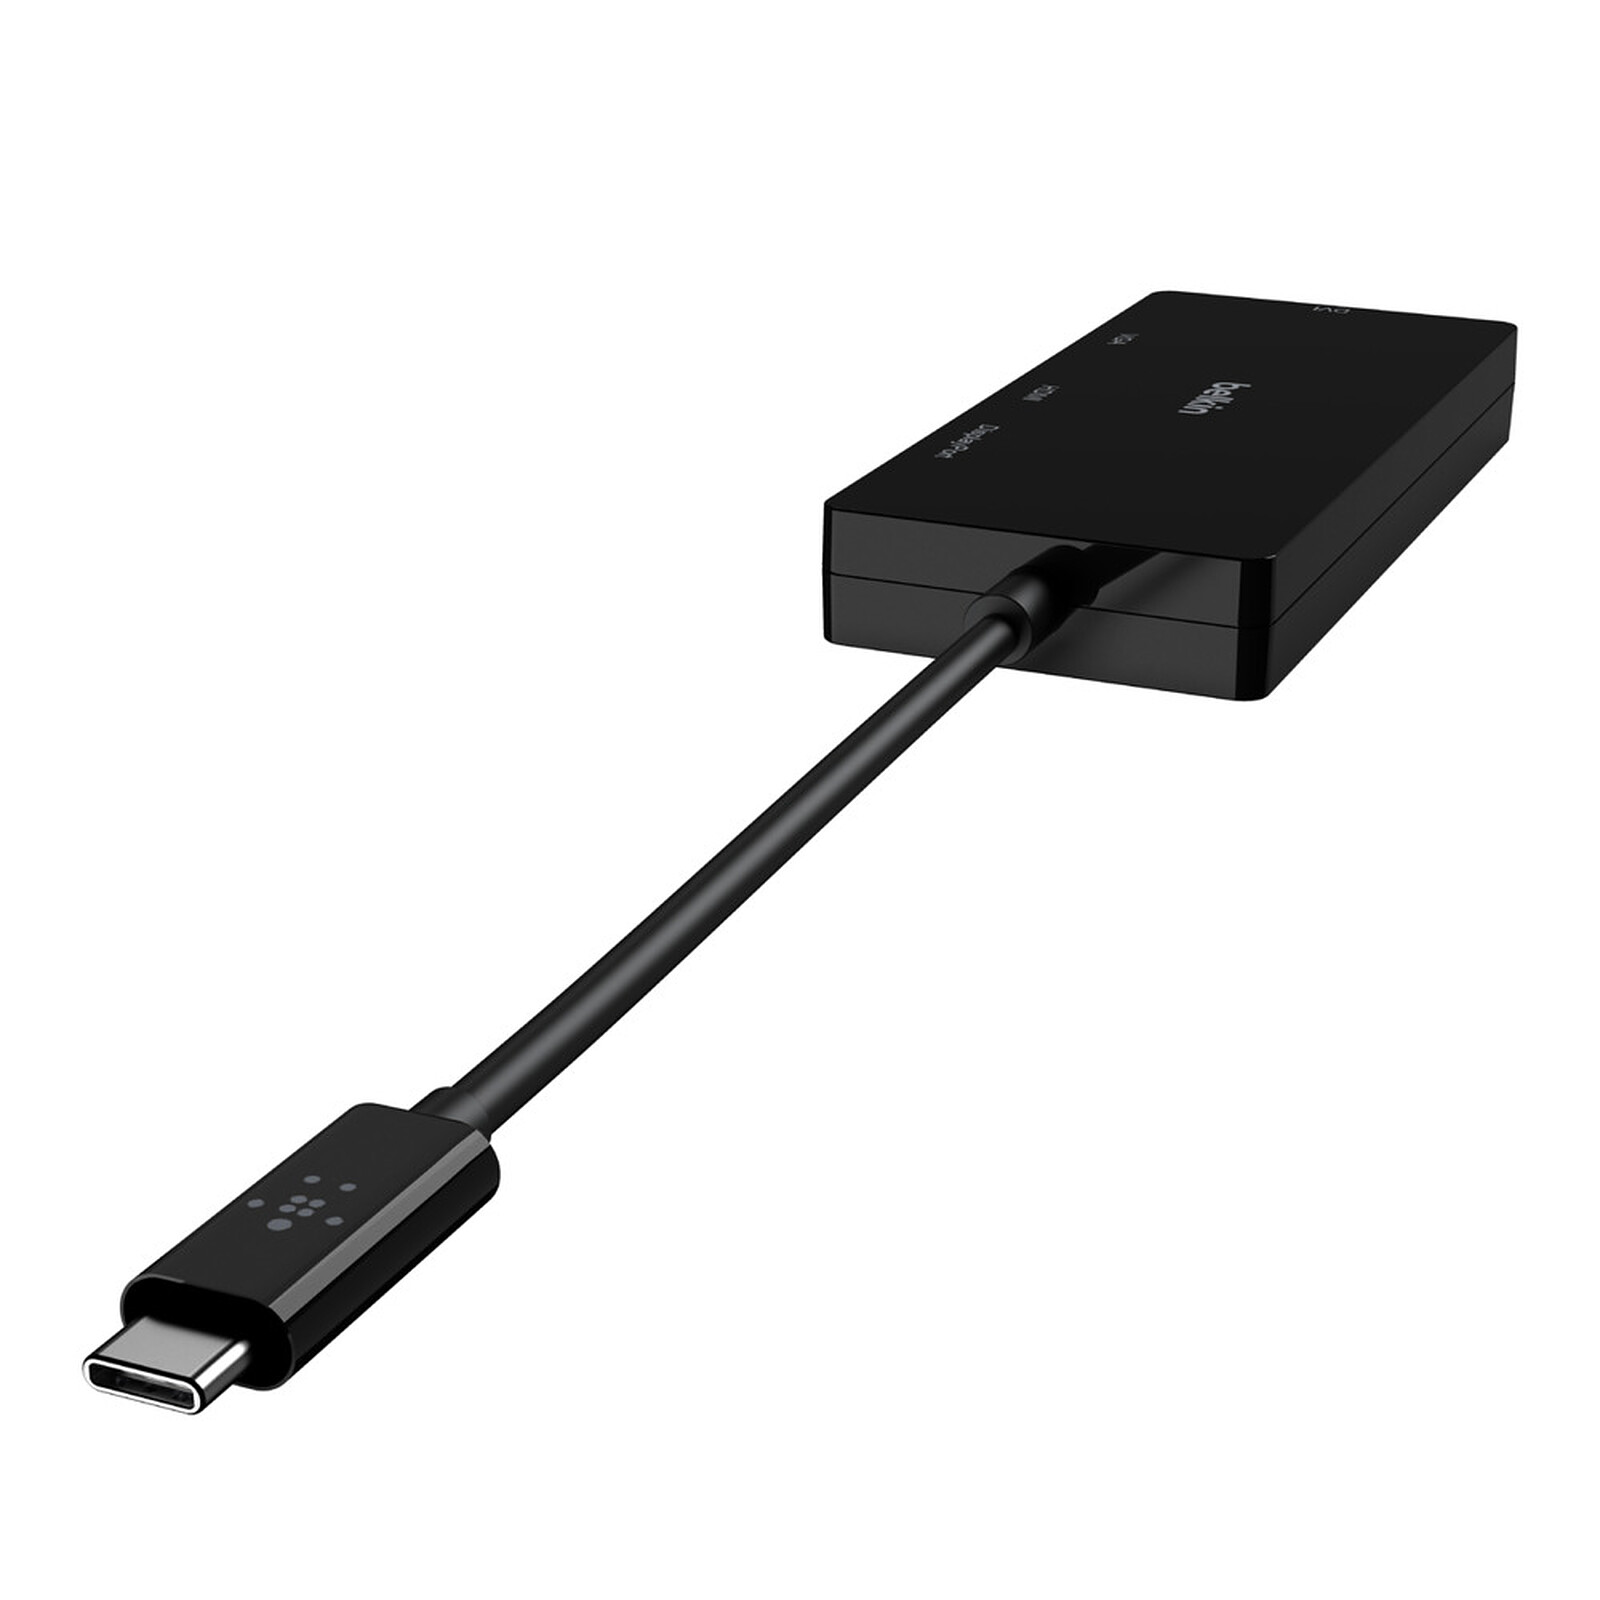 Adaptateur HDMI sur USB 3.0 - USB - Garantie 3 ans LDLC